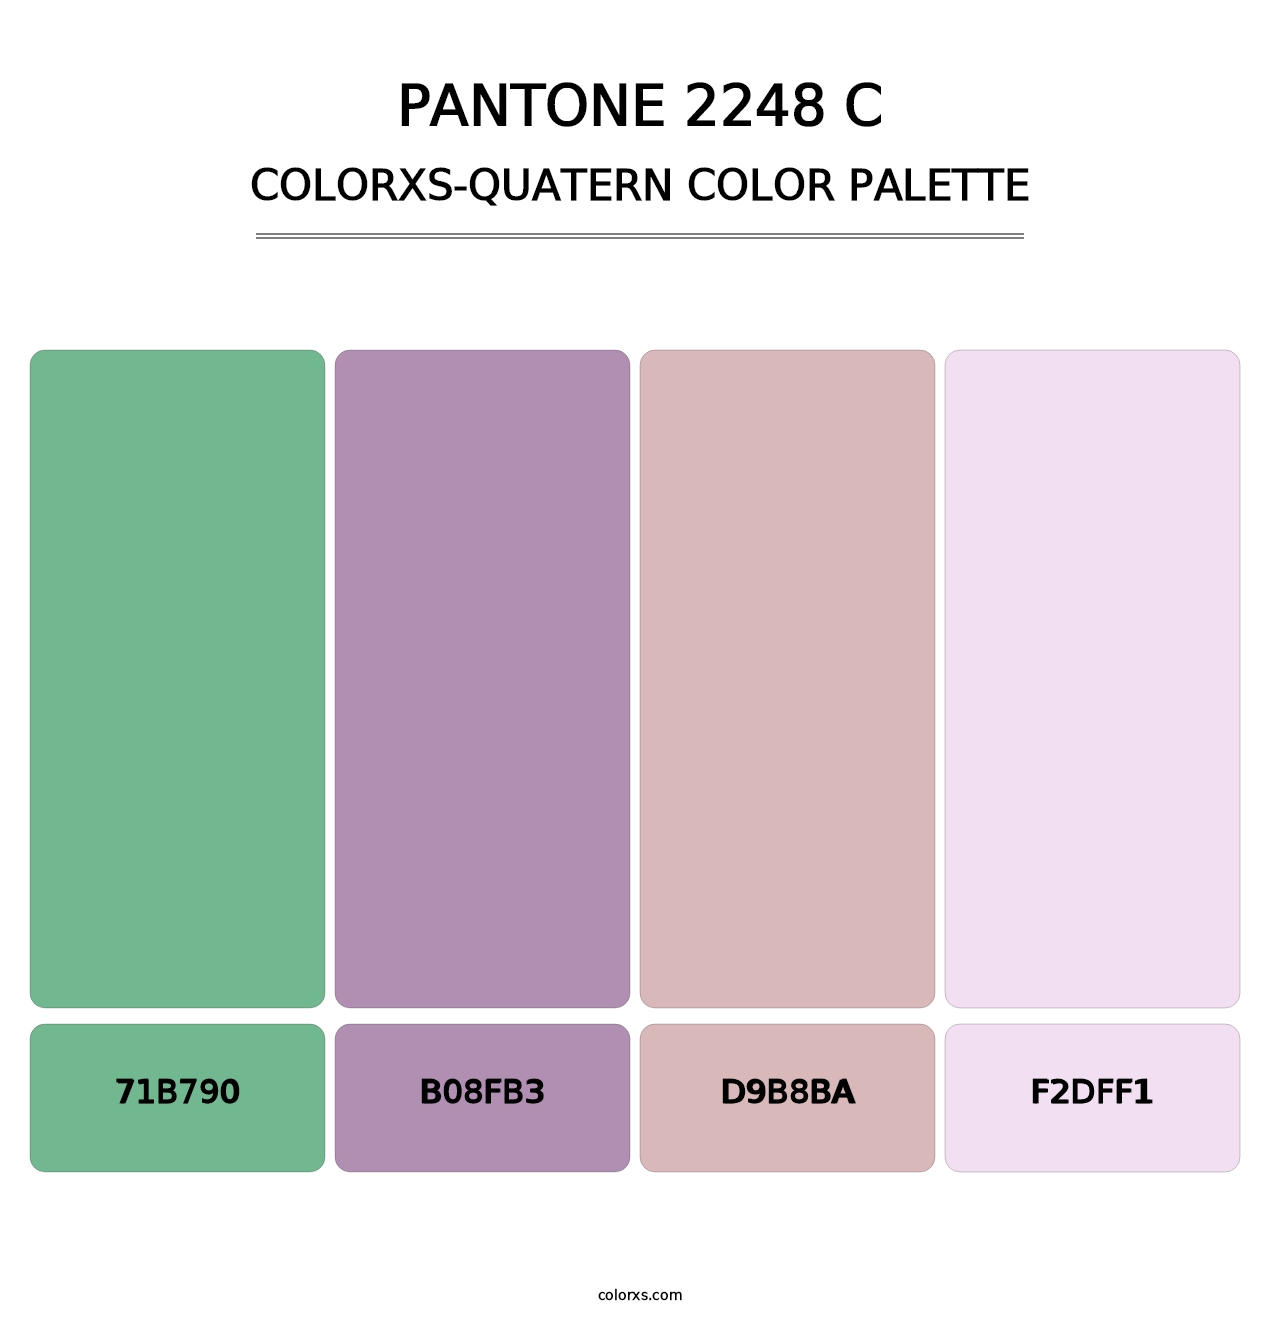 PANTONE 2248 C - Colorxs Quatern Palette